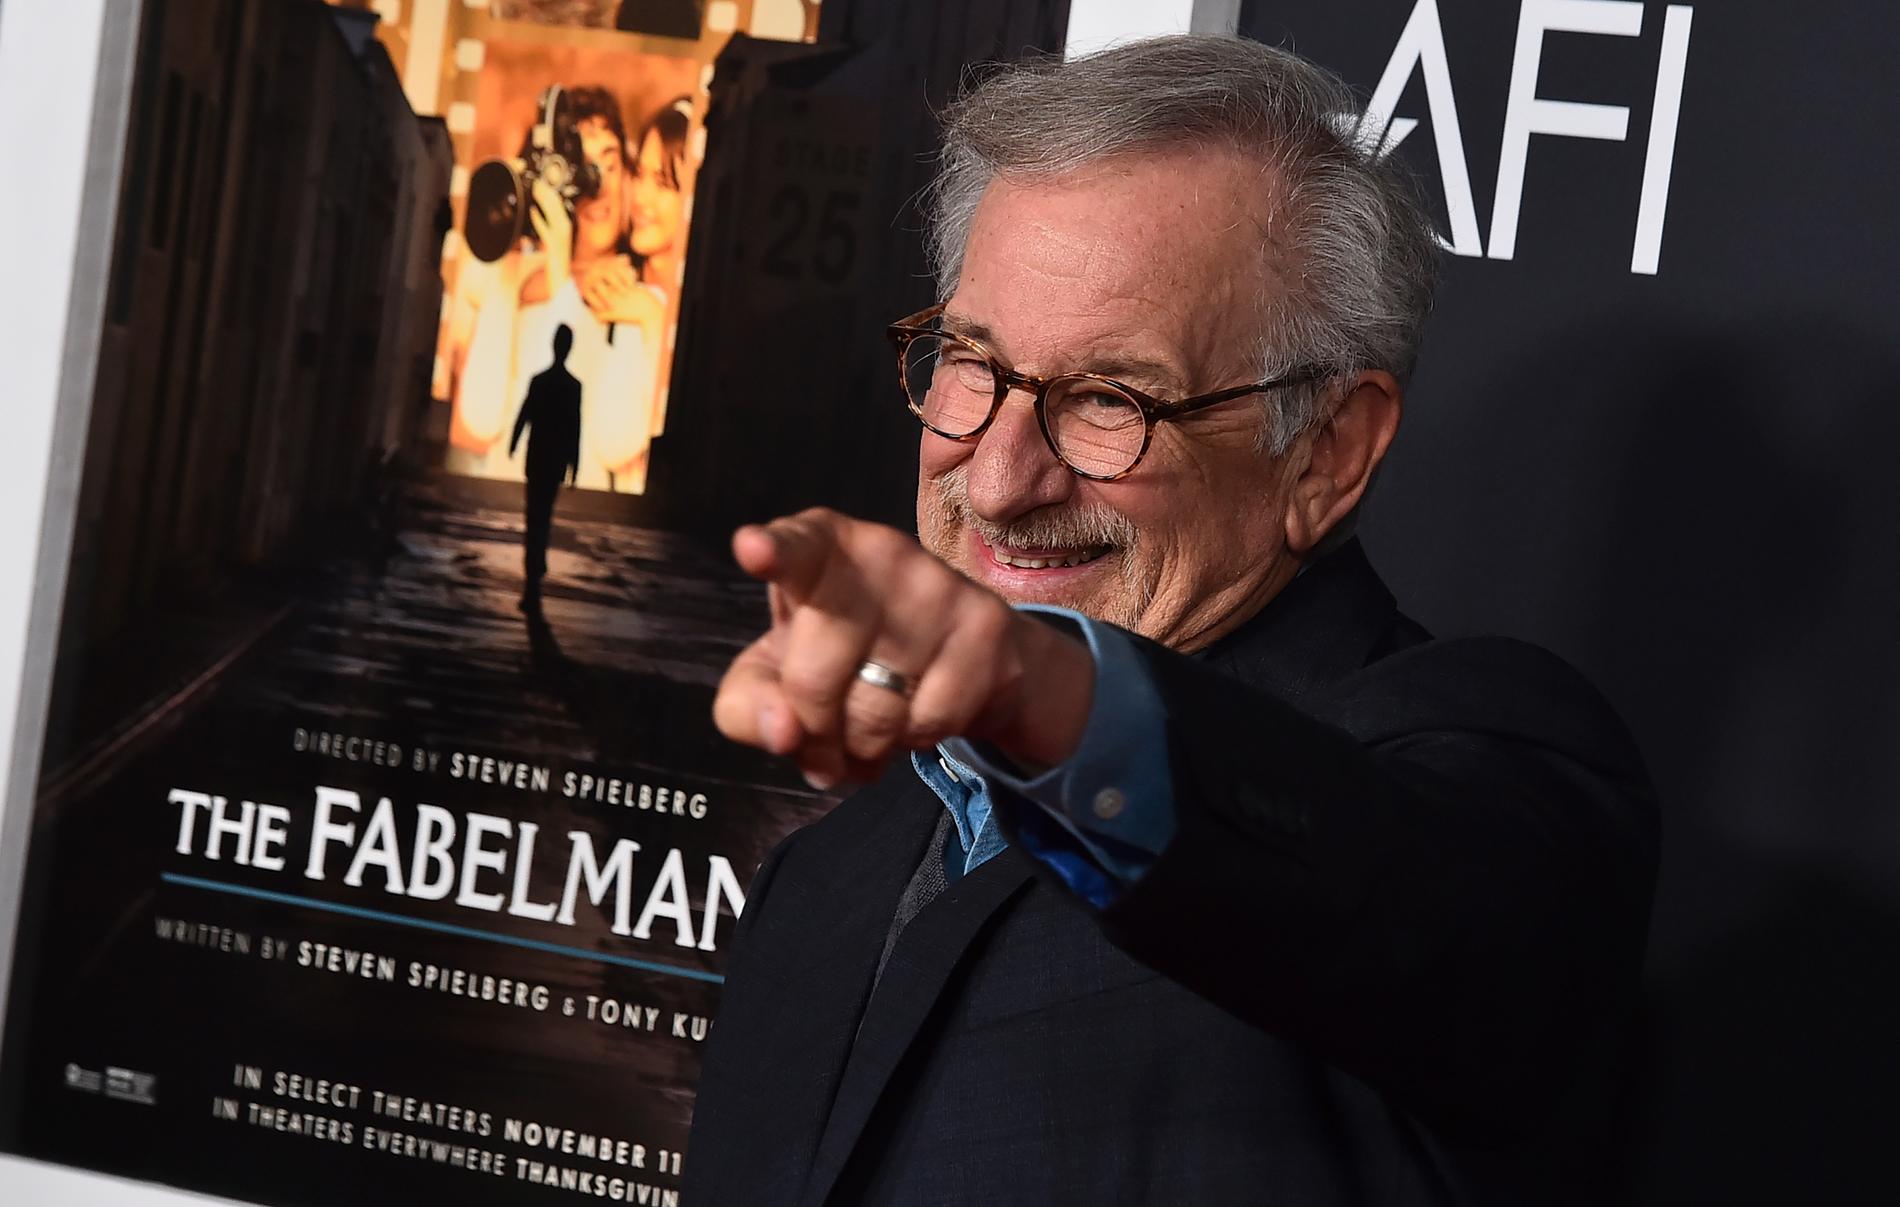 Steven Spielberg blir en av huvudpersonerna på filmfestivalen i Berlin nästa år. Arkivbild.